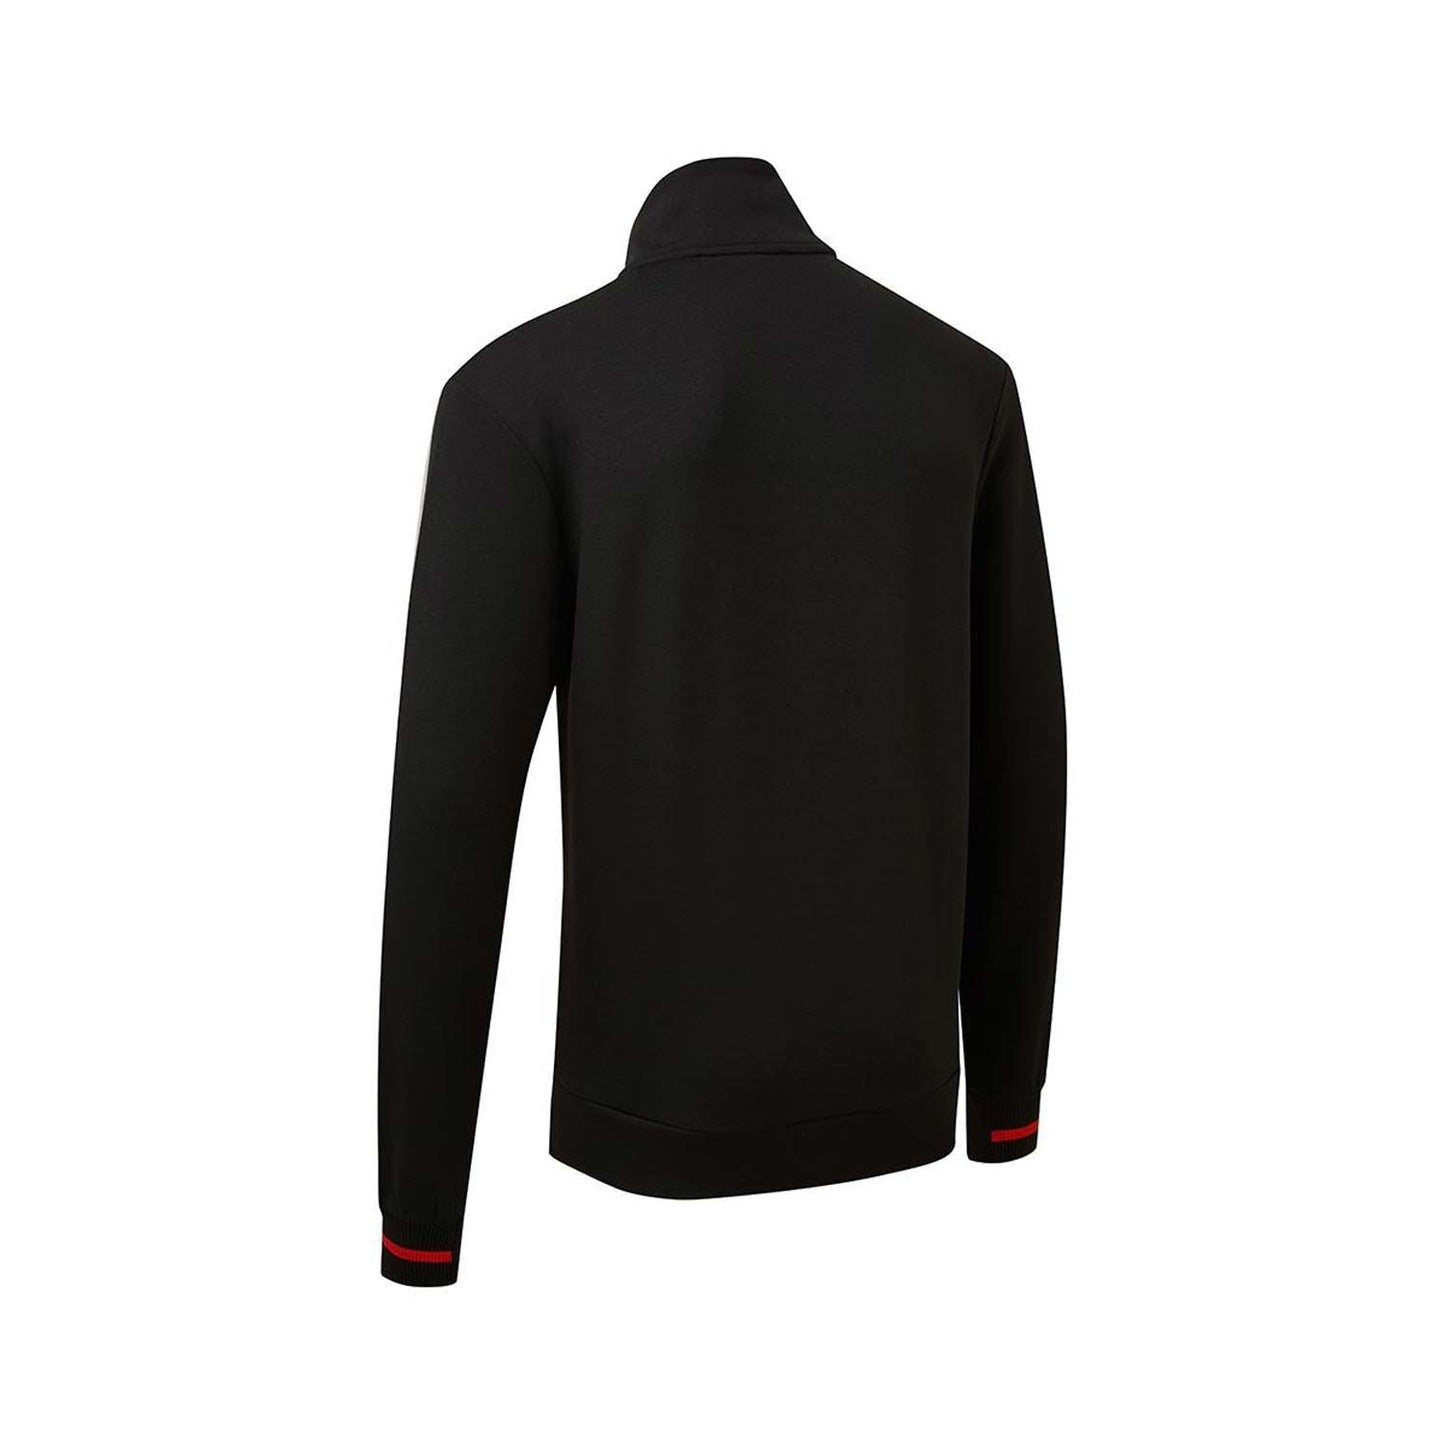 Toyota Japan Men's Zip Sweatshirt Black